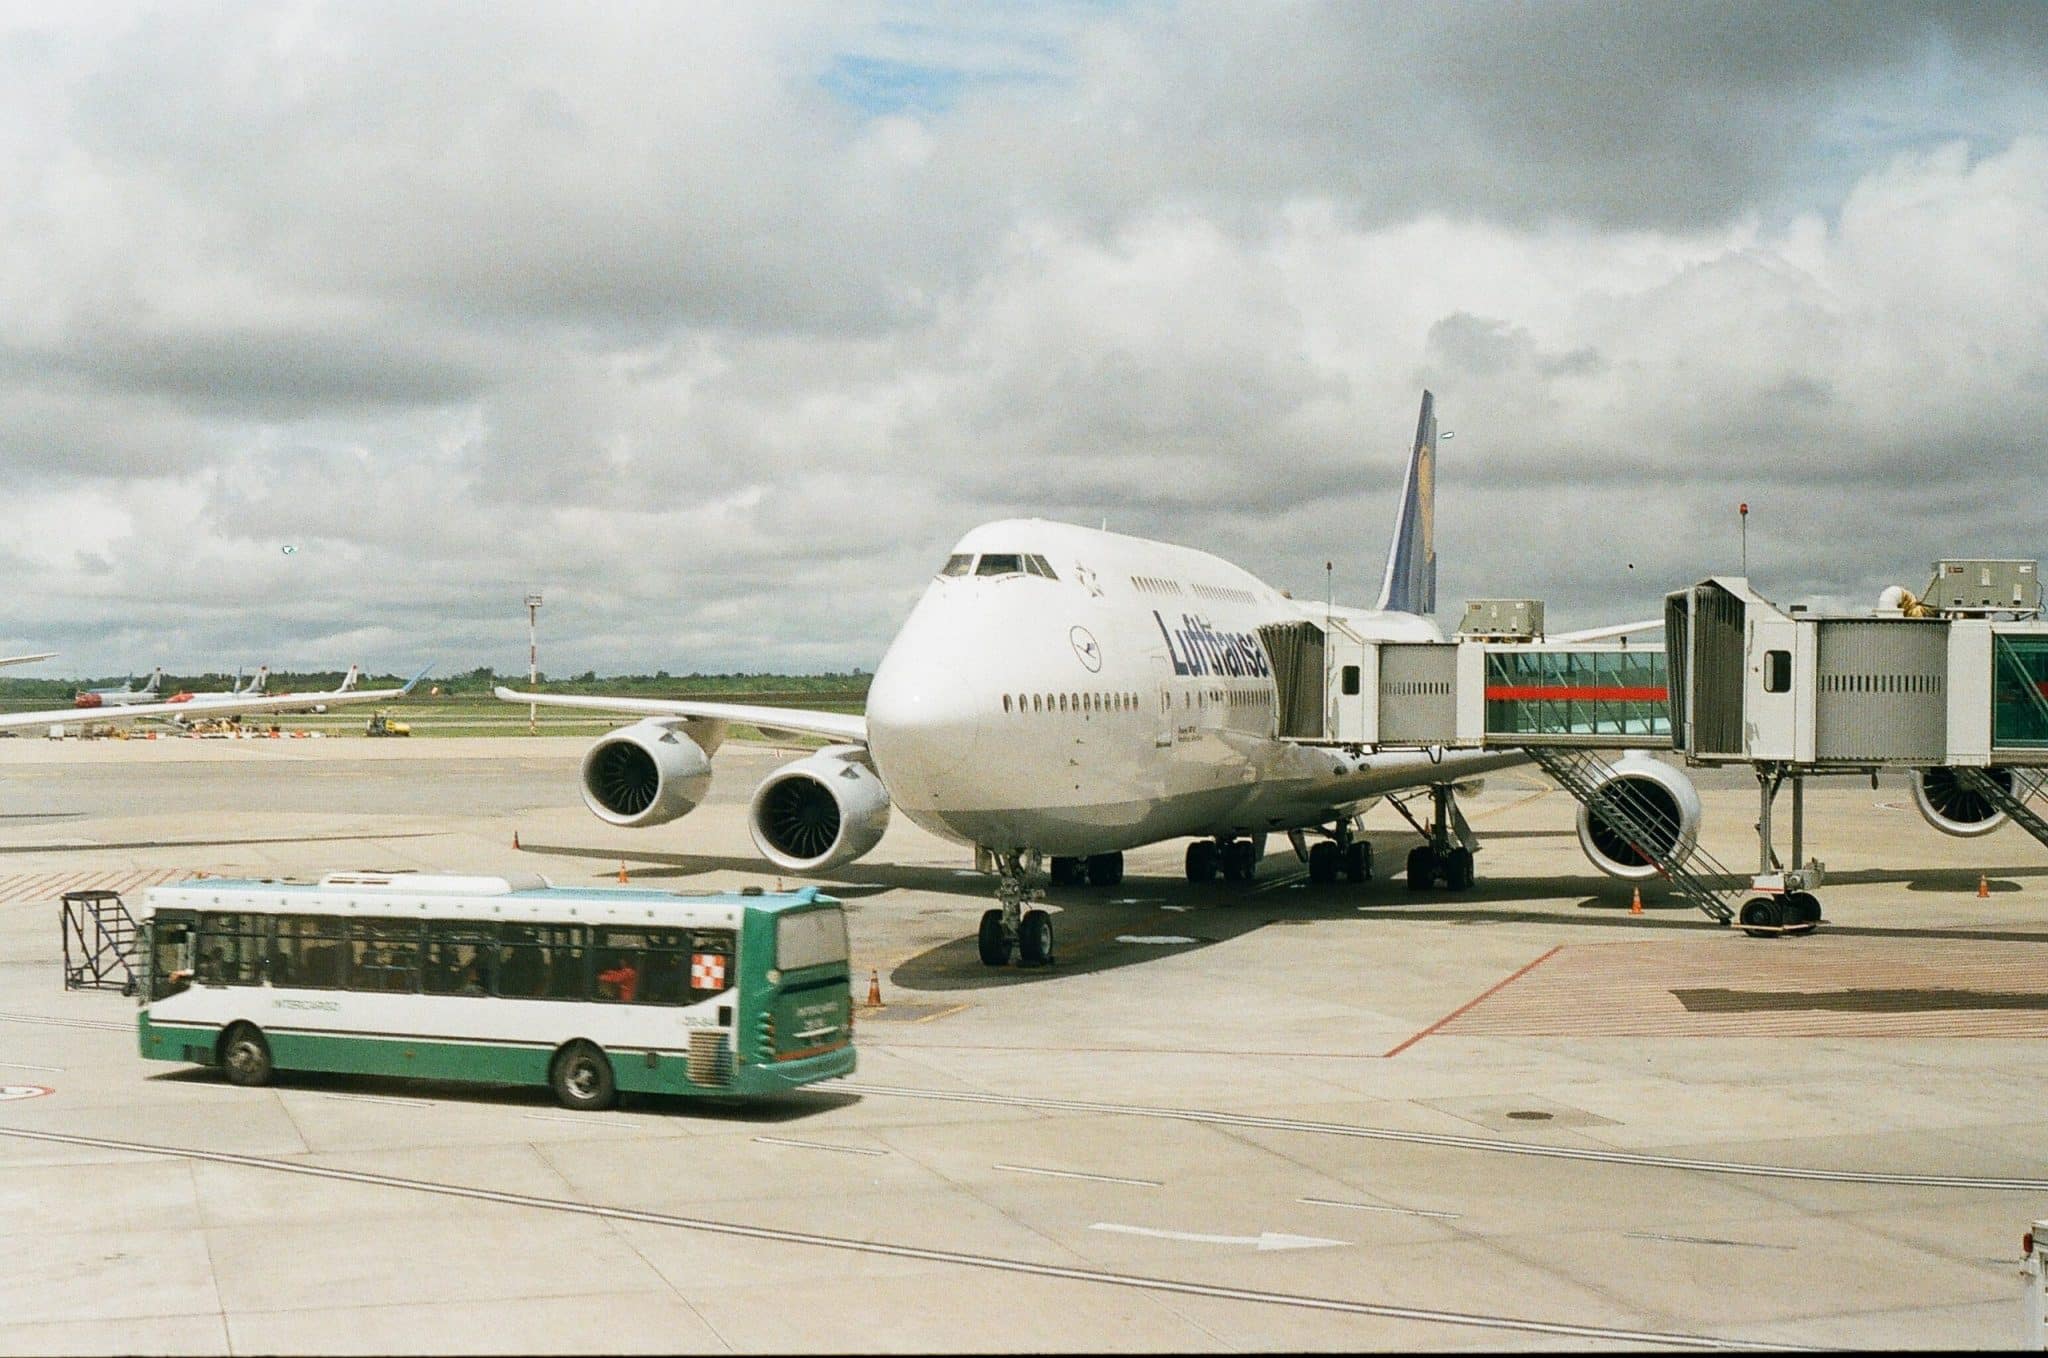 airport transfer service in Dubai